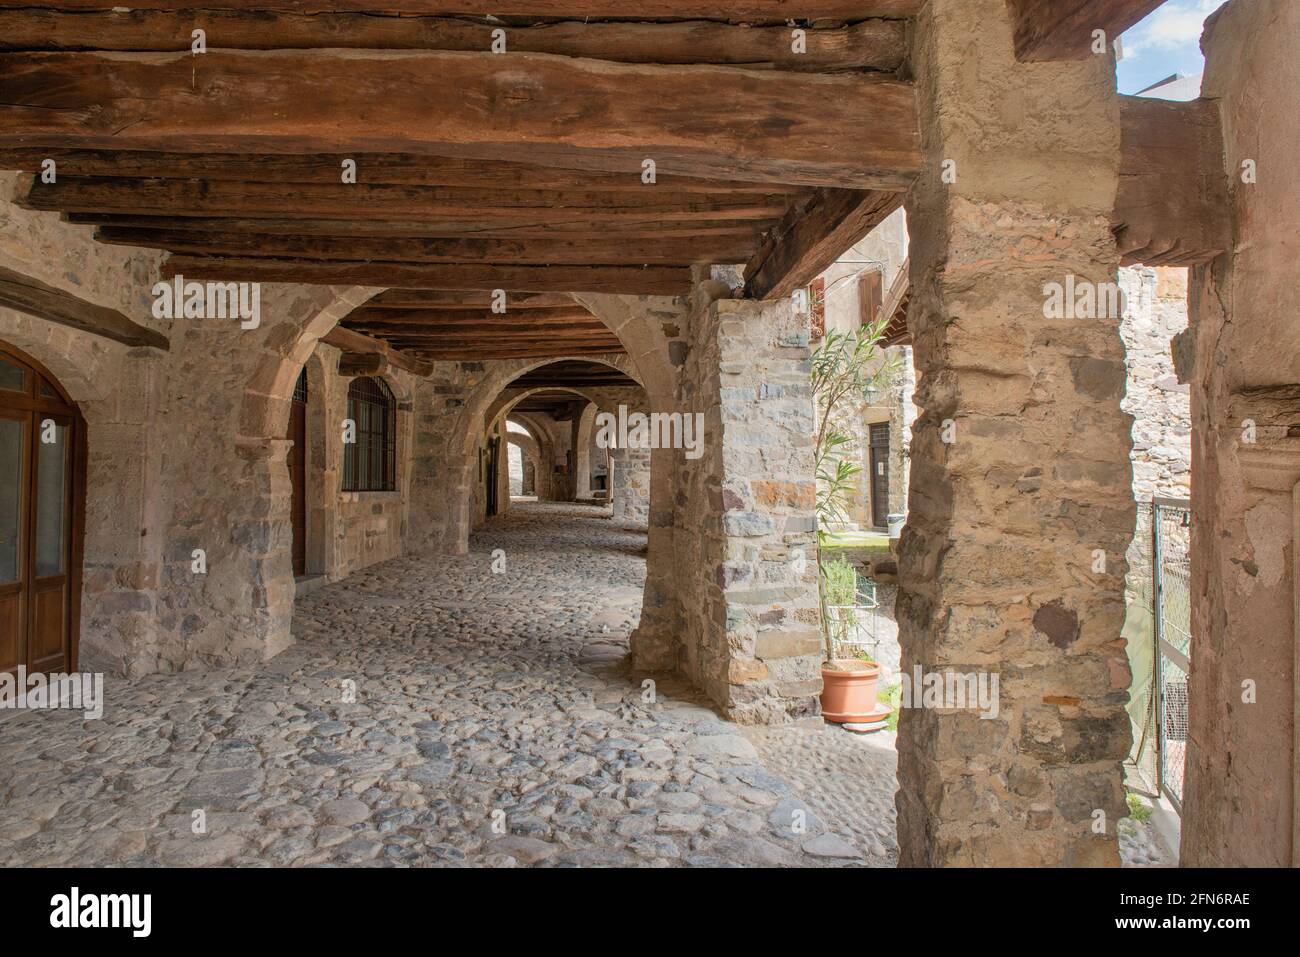 Arches in the ancient medieval village of camerata cornello Stock Photo